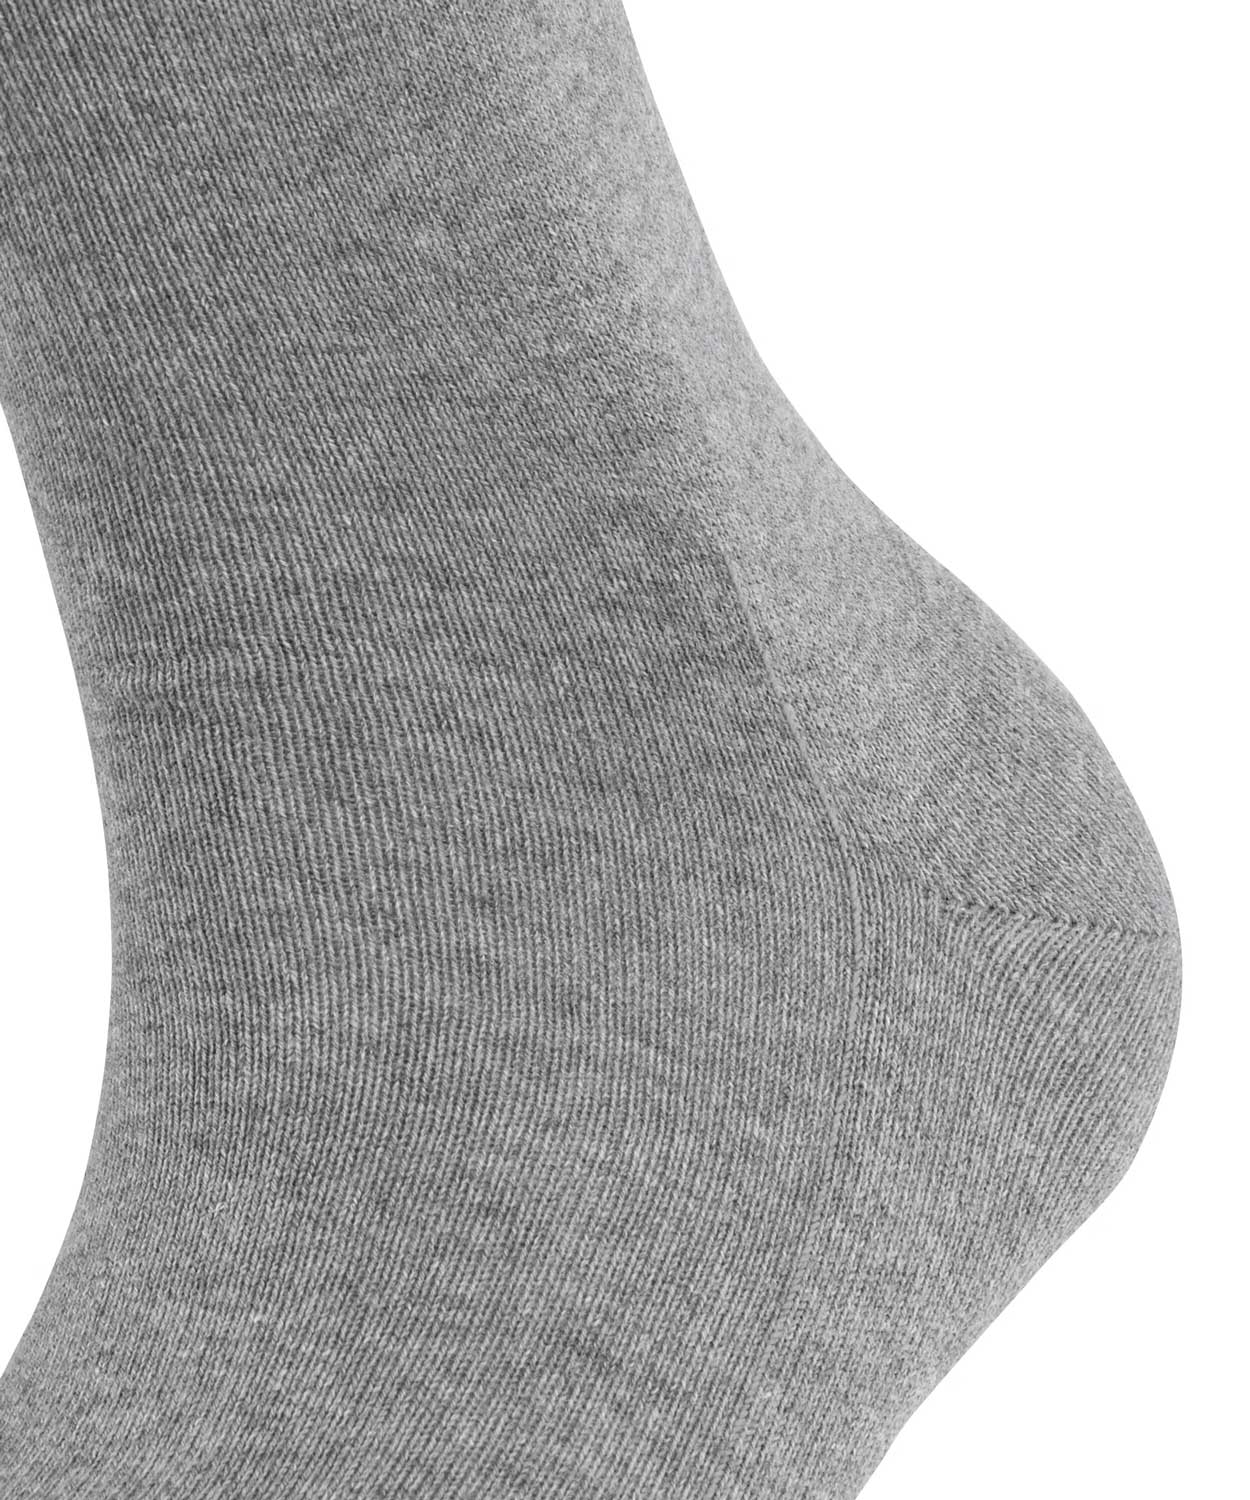 Socks - Family  - Women